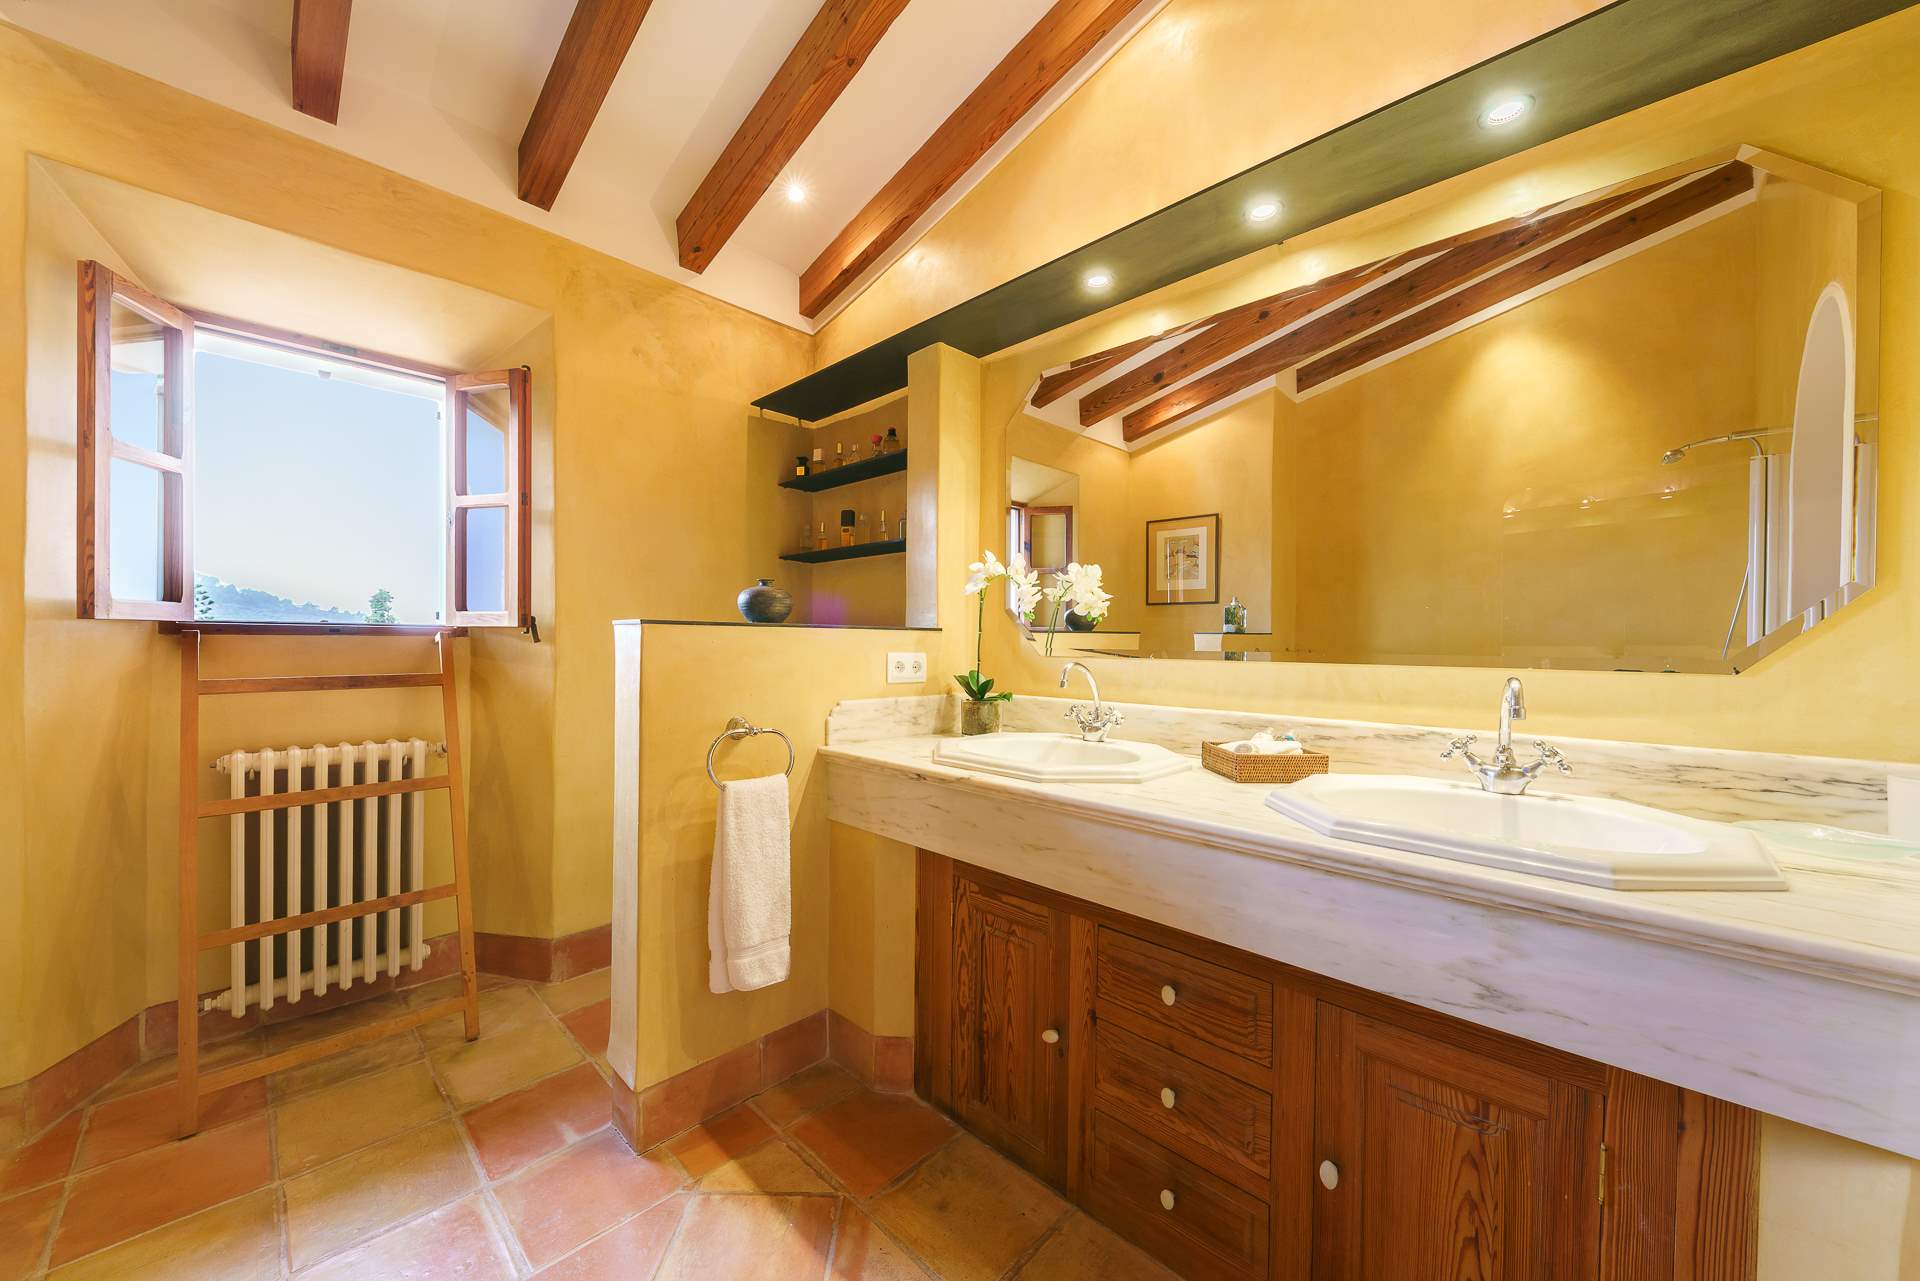 Sa Tanca, 3 Bedroom Rental, 3 bedroom villa in Soller & Deia, Majorca Photo #23